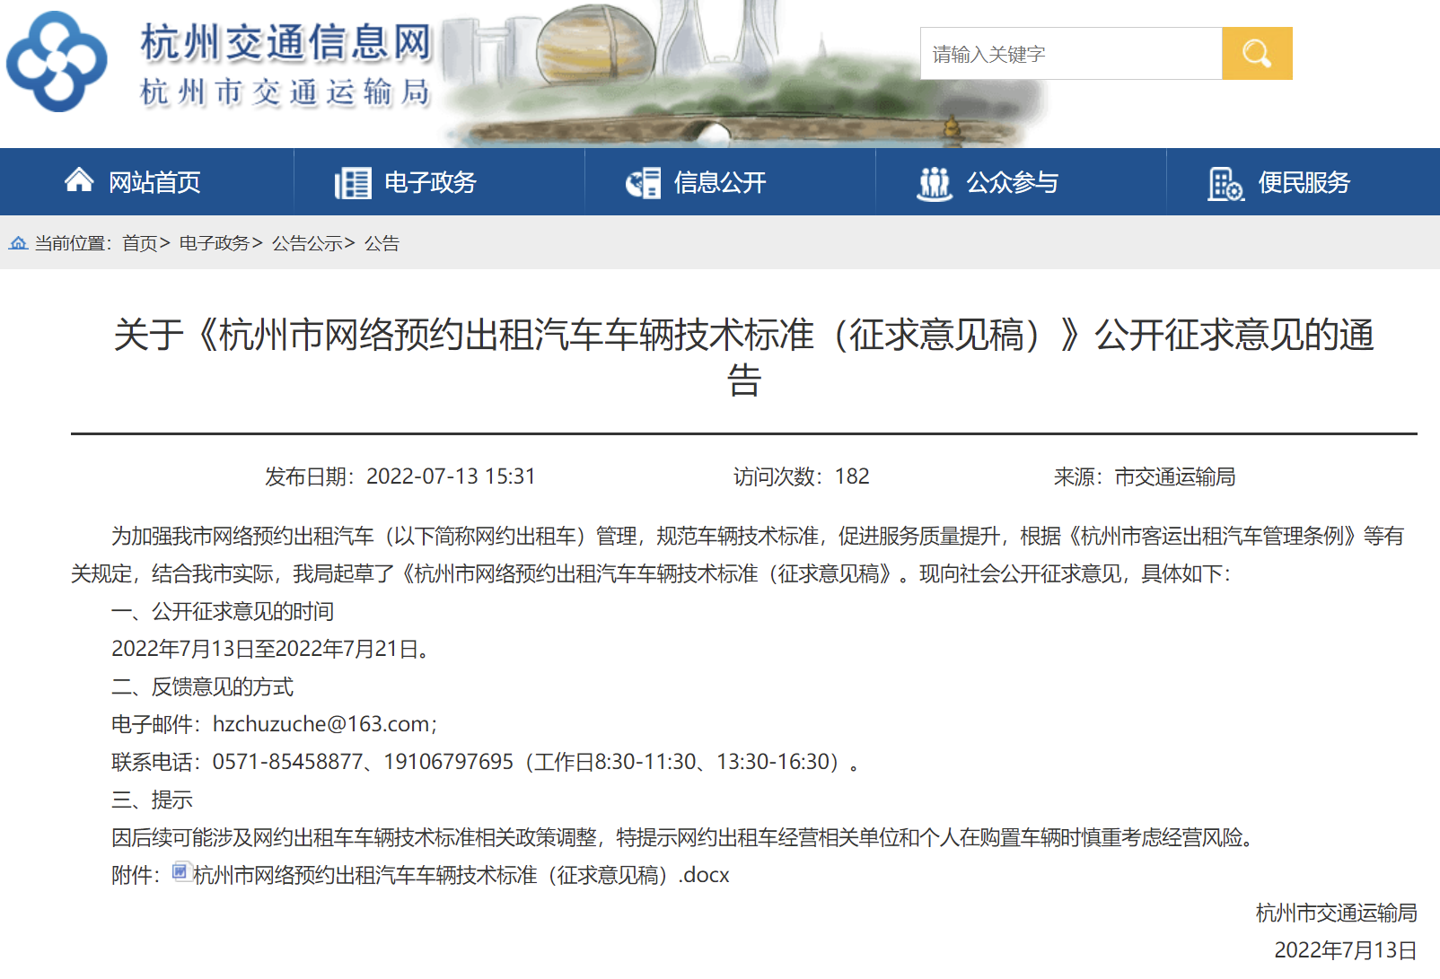 关于《杭州市网络预约出租汽车车辆技术标准（征求意见稿）》公开征求意见的通告